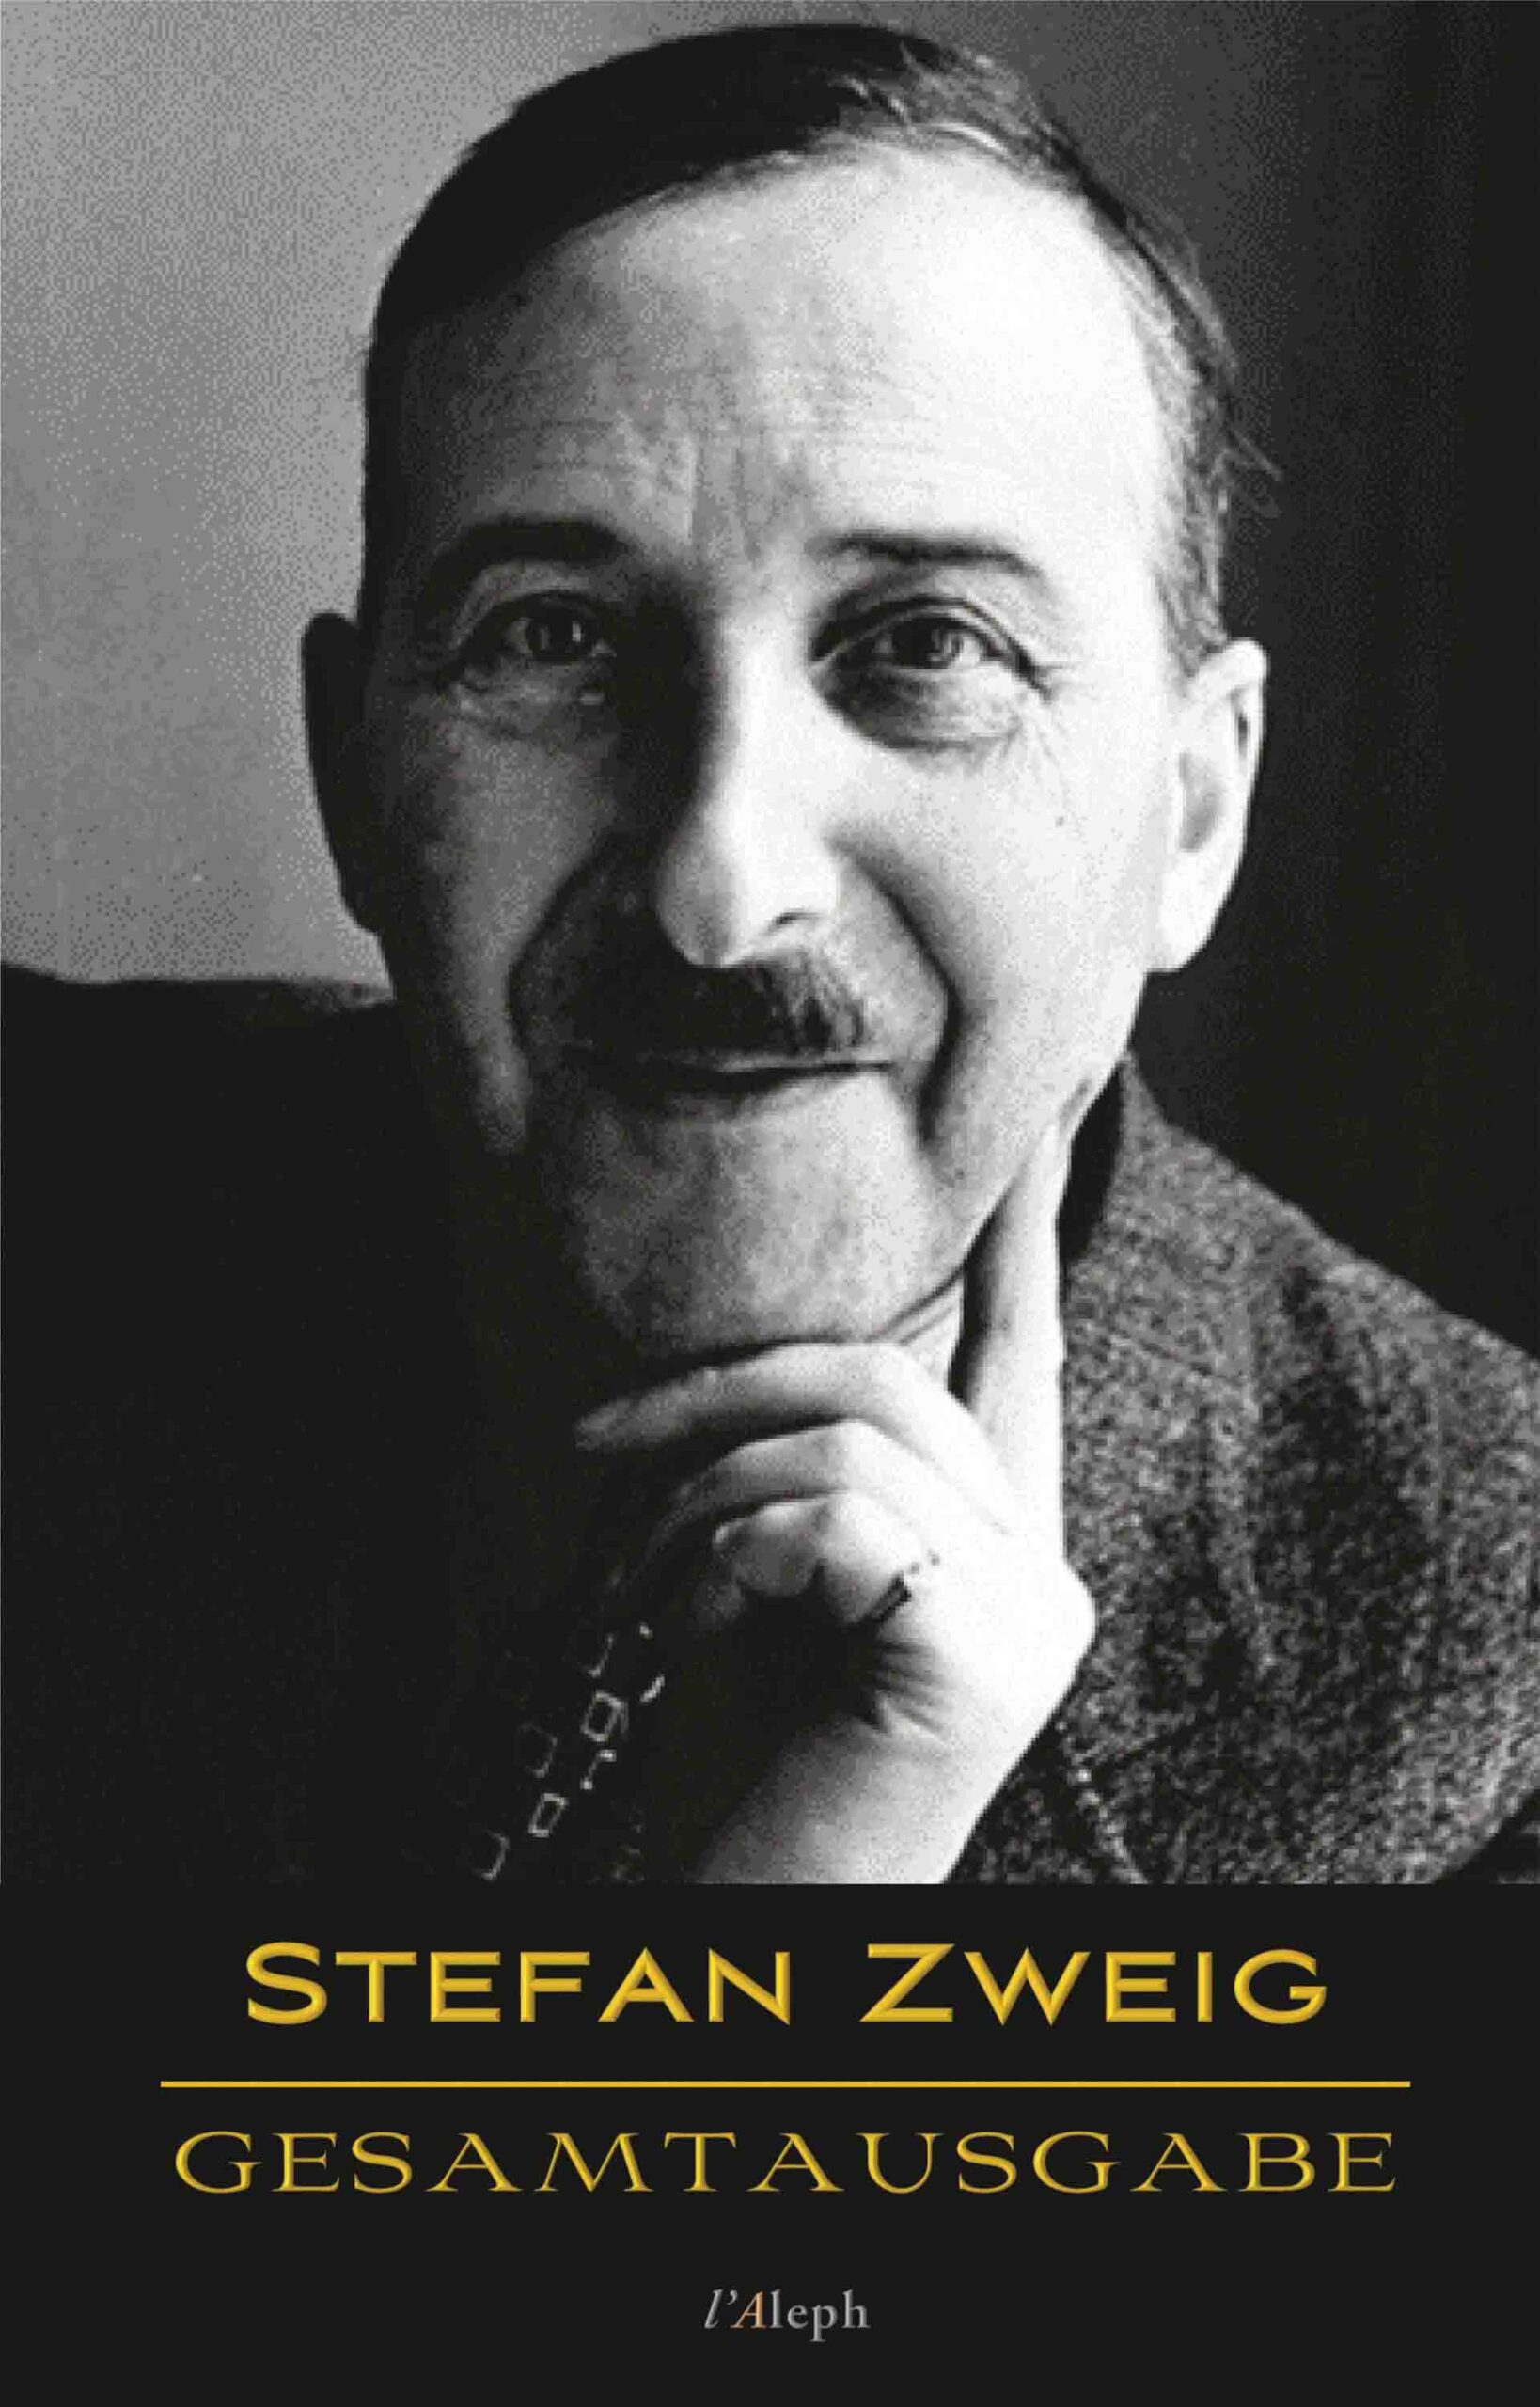 Stefan Zweig: Gesamtausgabe (43 Werke, chronologisch)